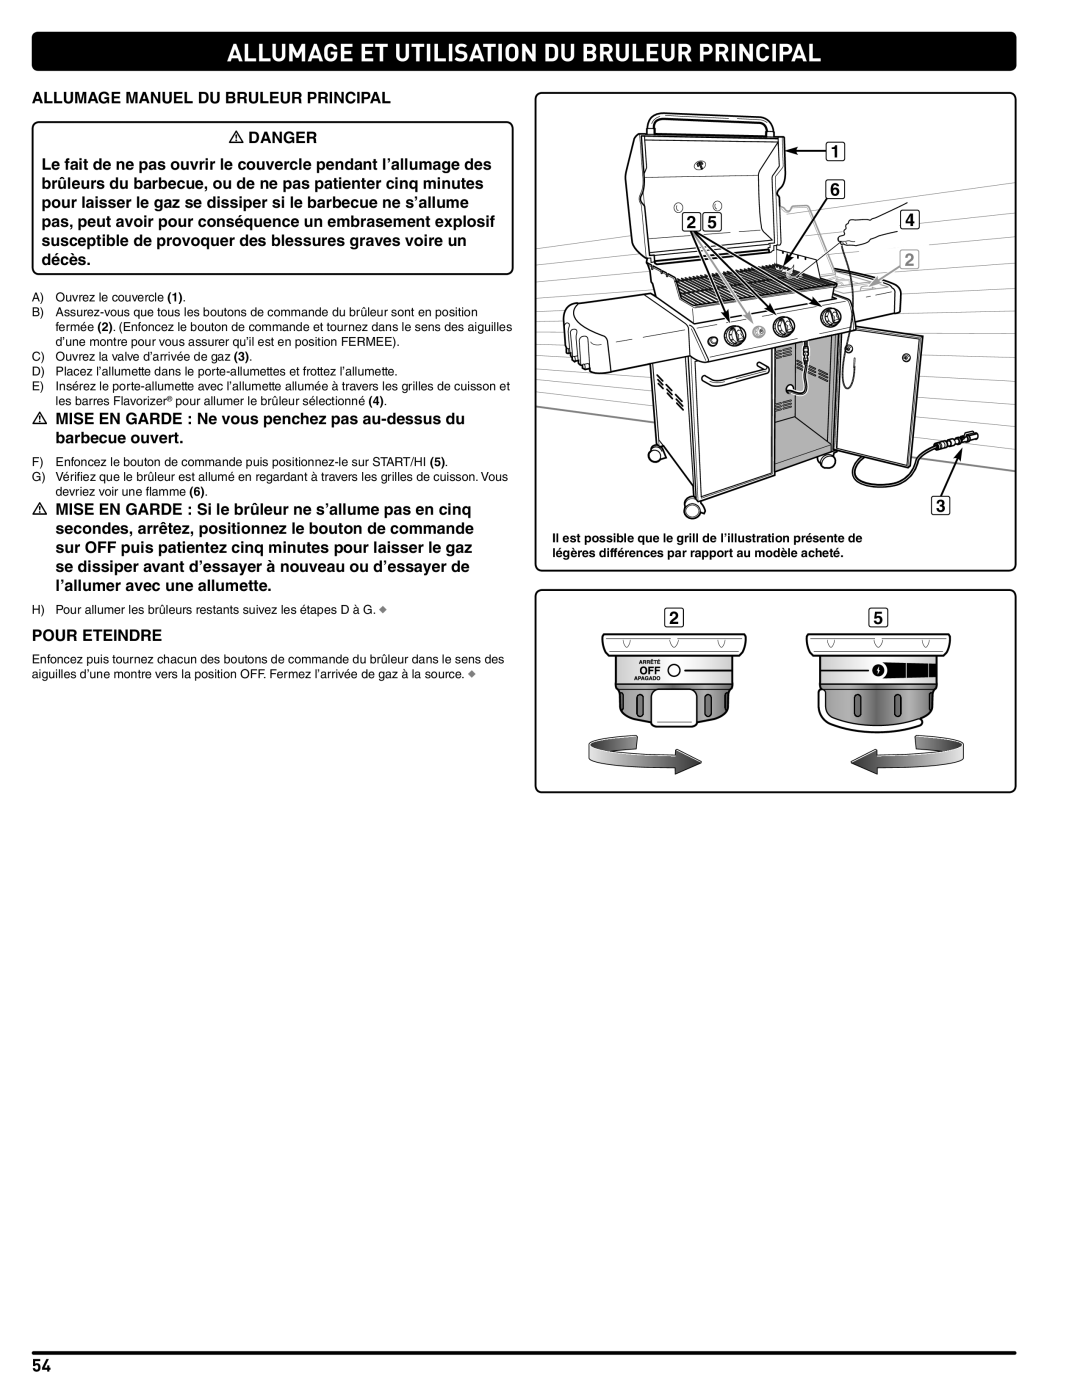 Weber 56515 manual Allumage Et Utilisation Du Bruleur Principal 